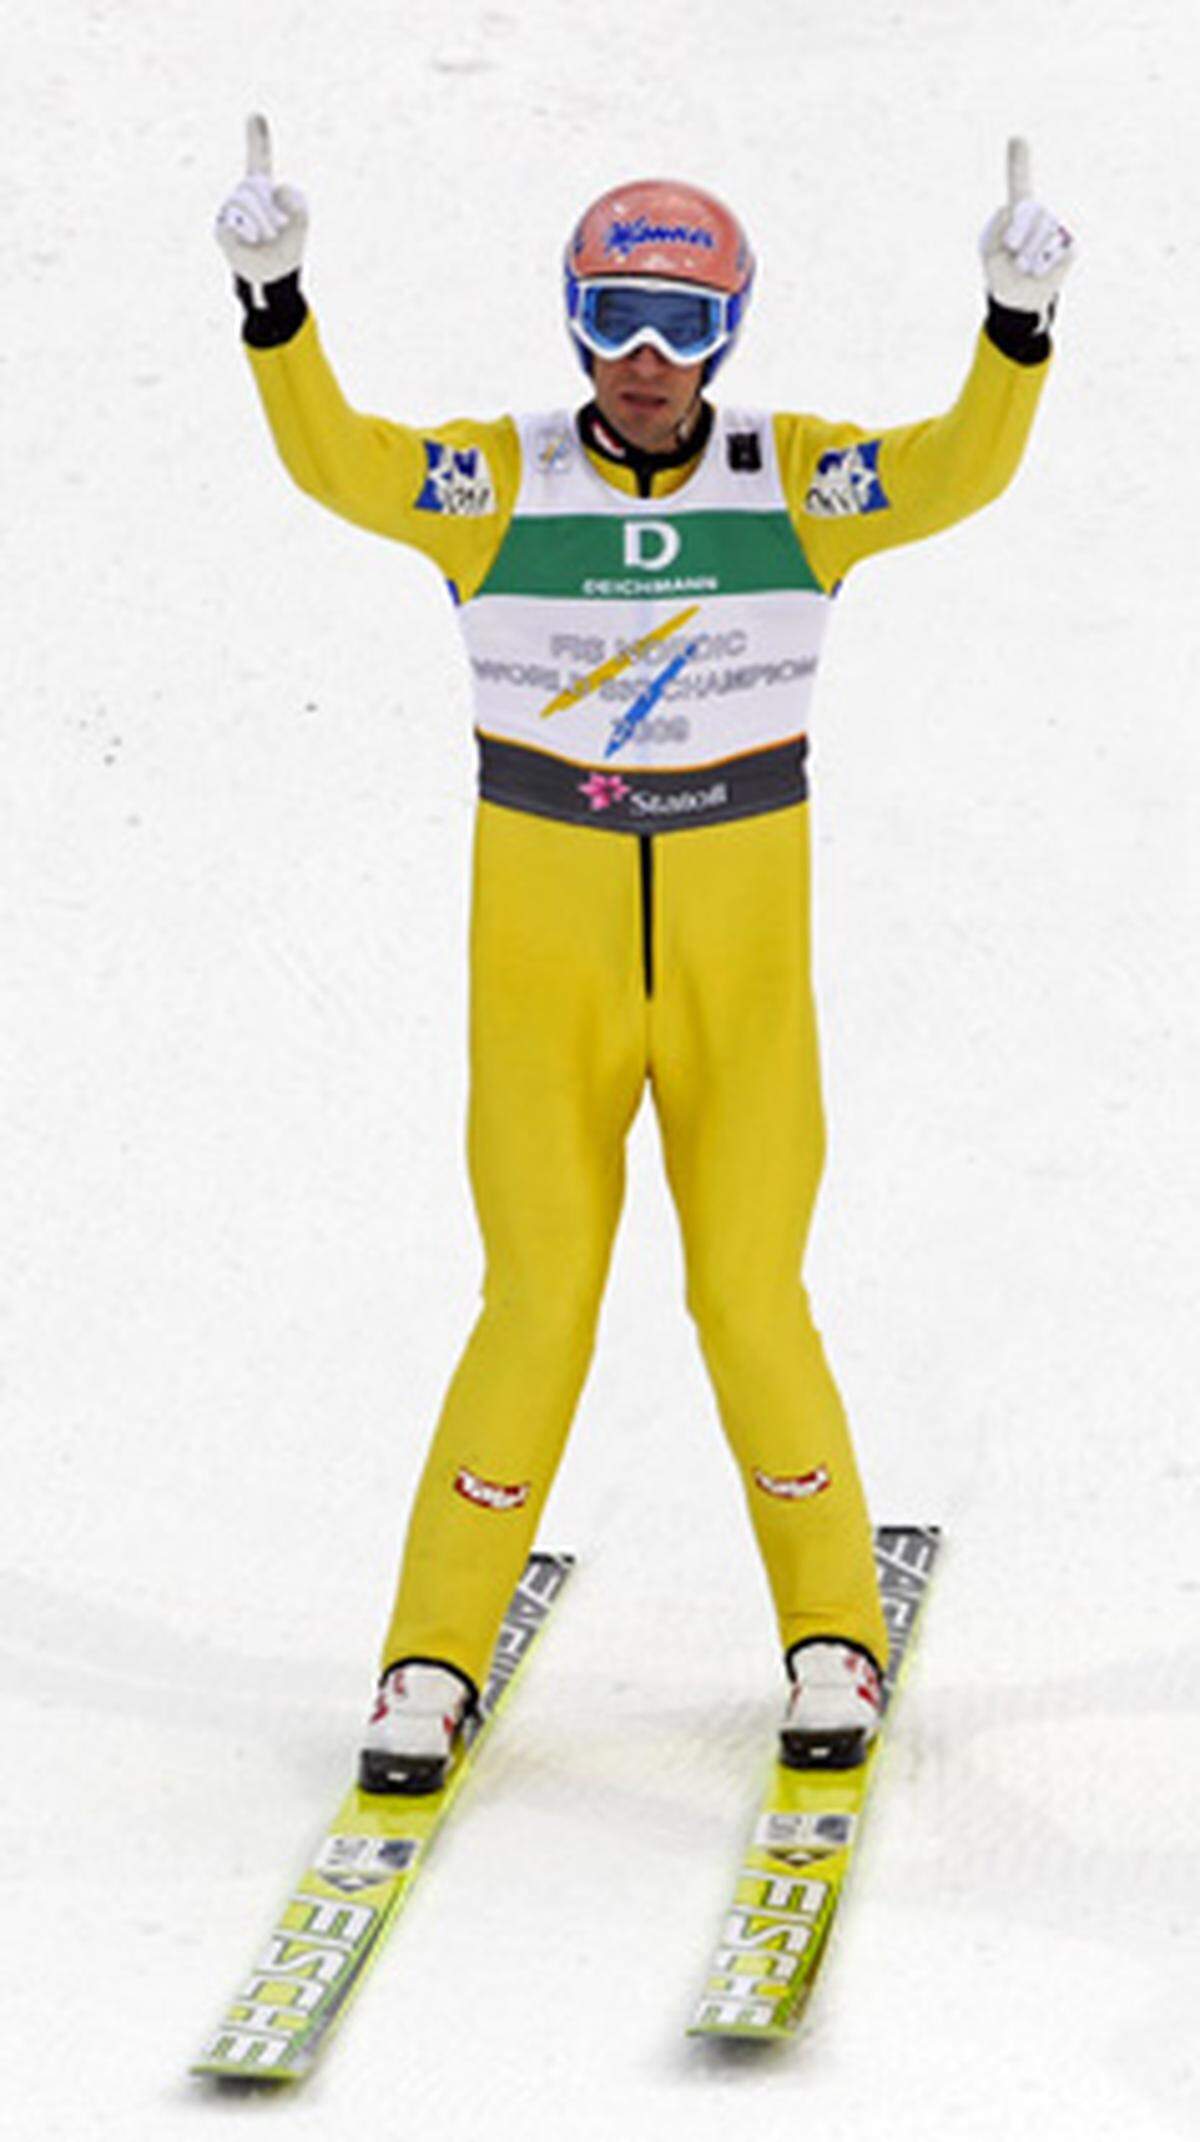 Das erste Mitglied der "Goldenen Generation" dieser Rangliste war bei den Triumphen in Liberec 2009 und dem doppelten Teamsieg 2011 Teil der Gewinnermannschaft. Bedeutet: Dreimal Gold